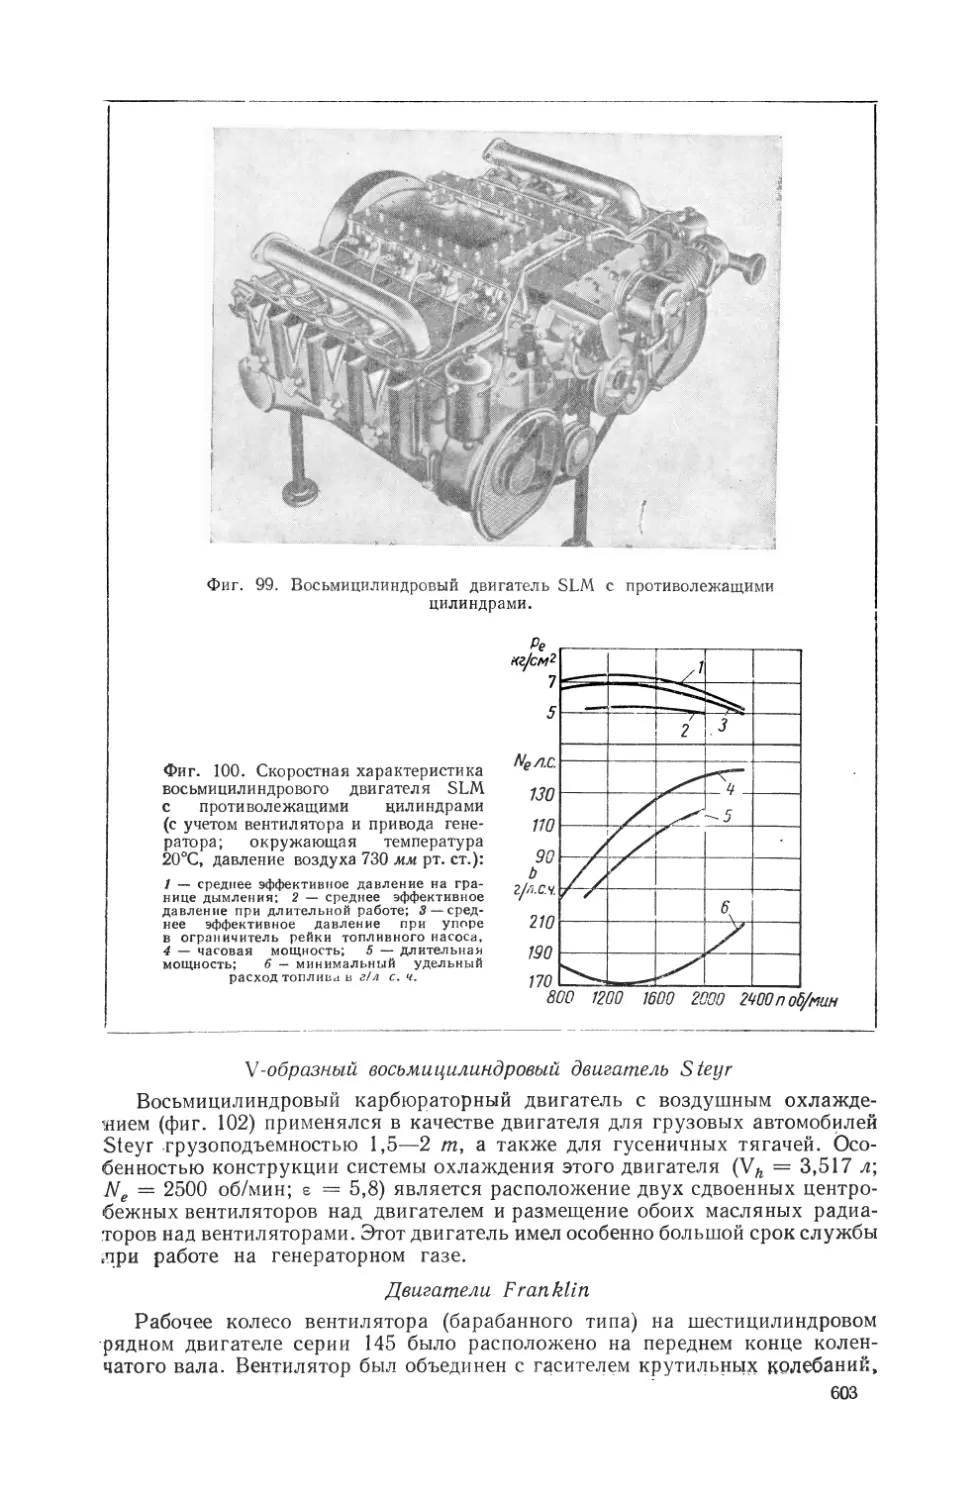 V-образный восьмицилиндровый двигатель Steyr
Двигатели Franklin